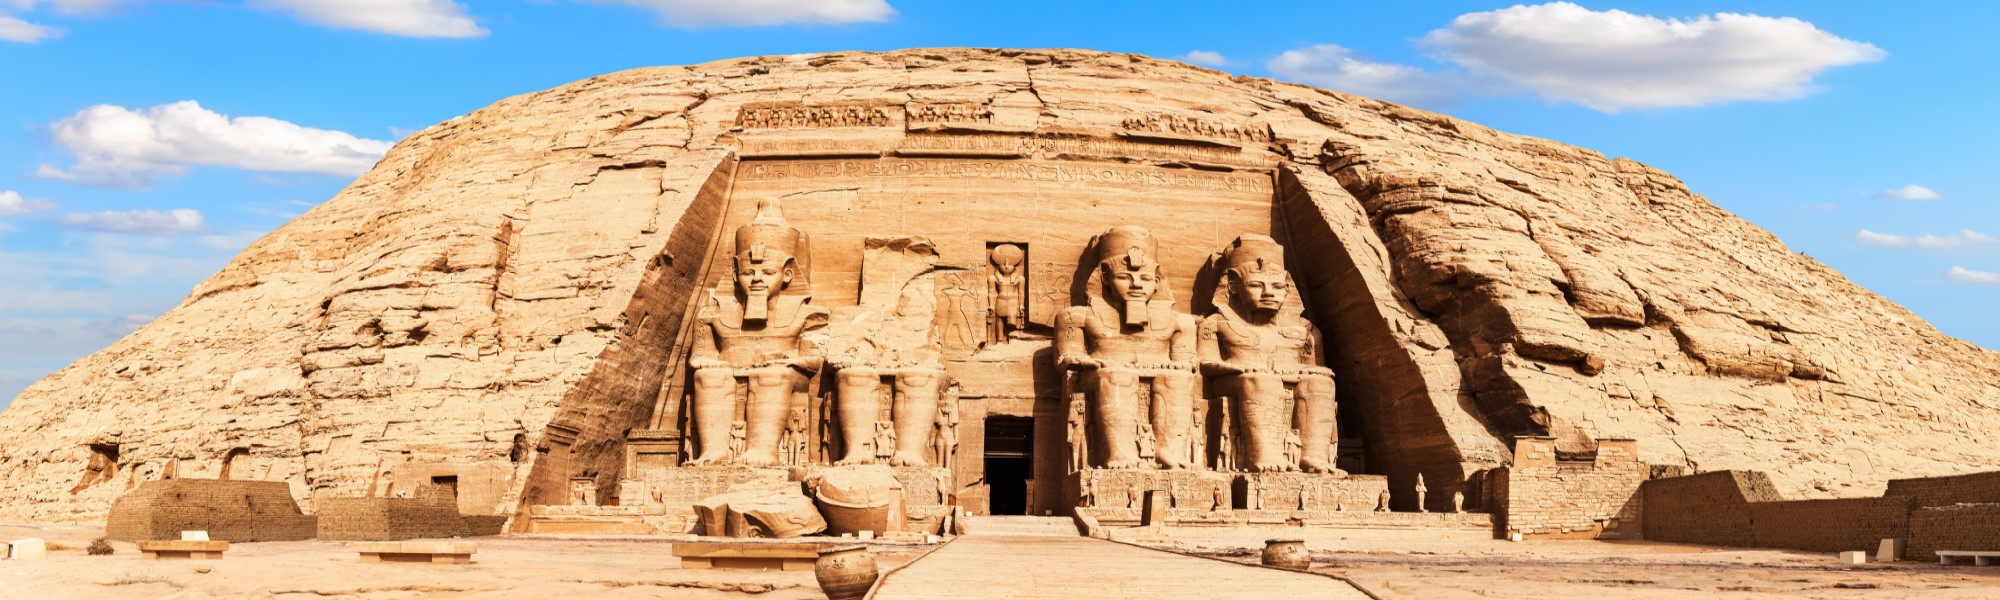 Egipte Abu Simbel Mediviatges